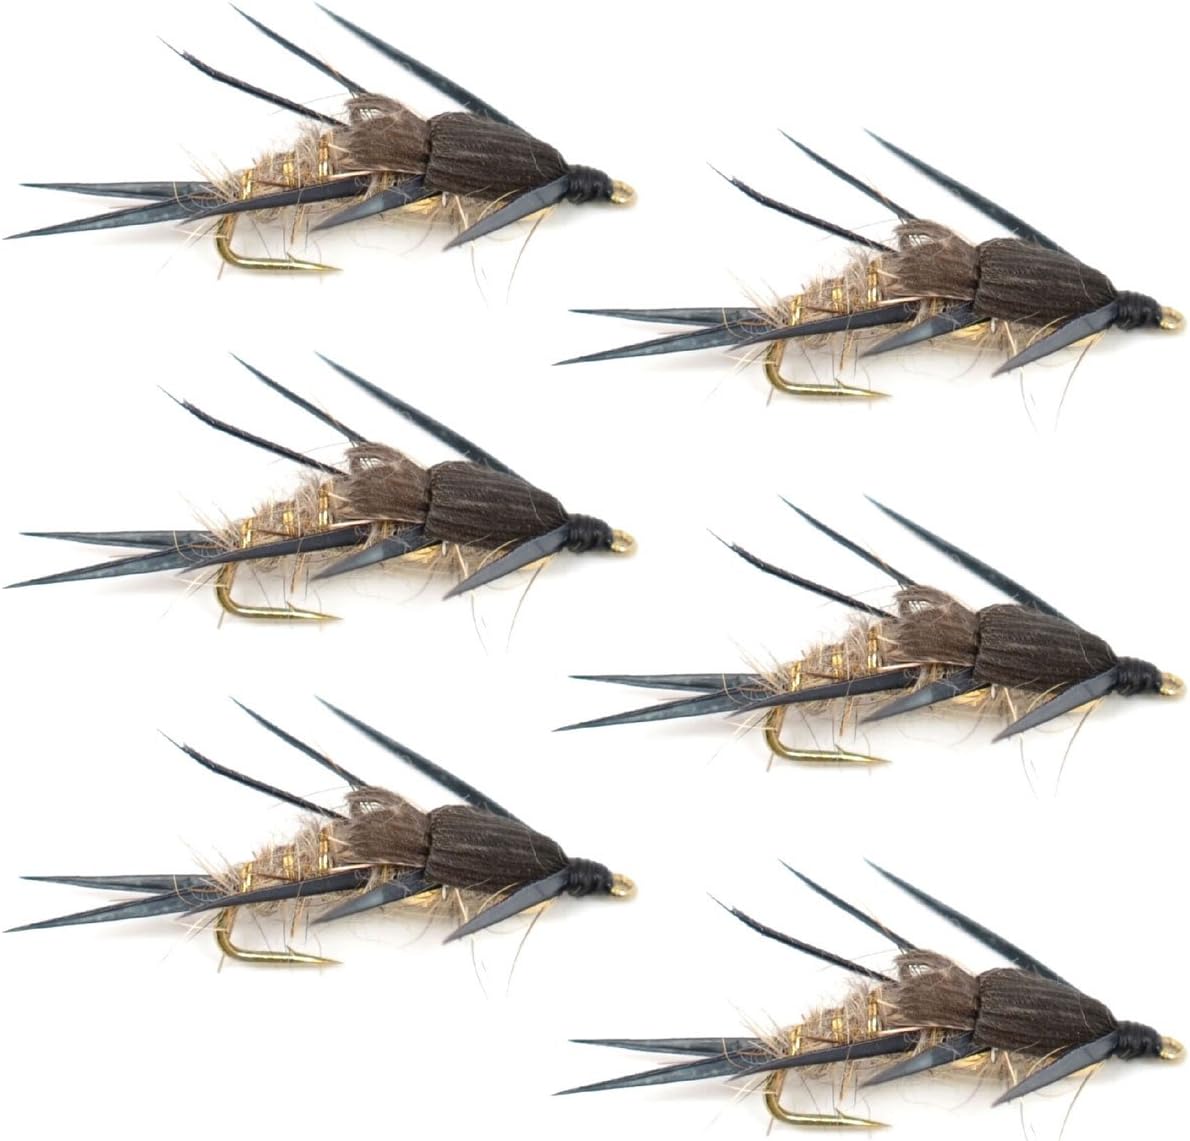 Moscas de pesca con mosca de ninfa con oreja de liebre acanalada dorada de doble cuenta, mosca húmeda para trucha y lubina, 6 moscas, tamaño de anzuelo 12